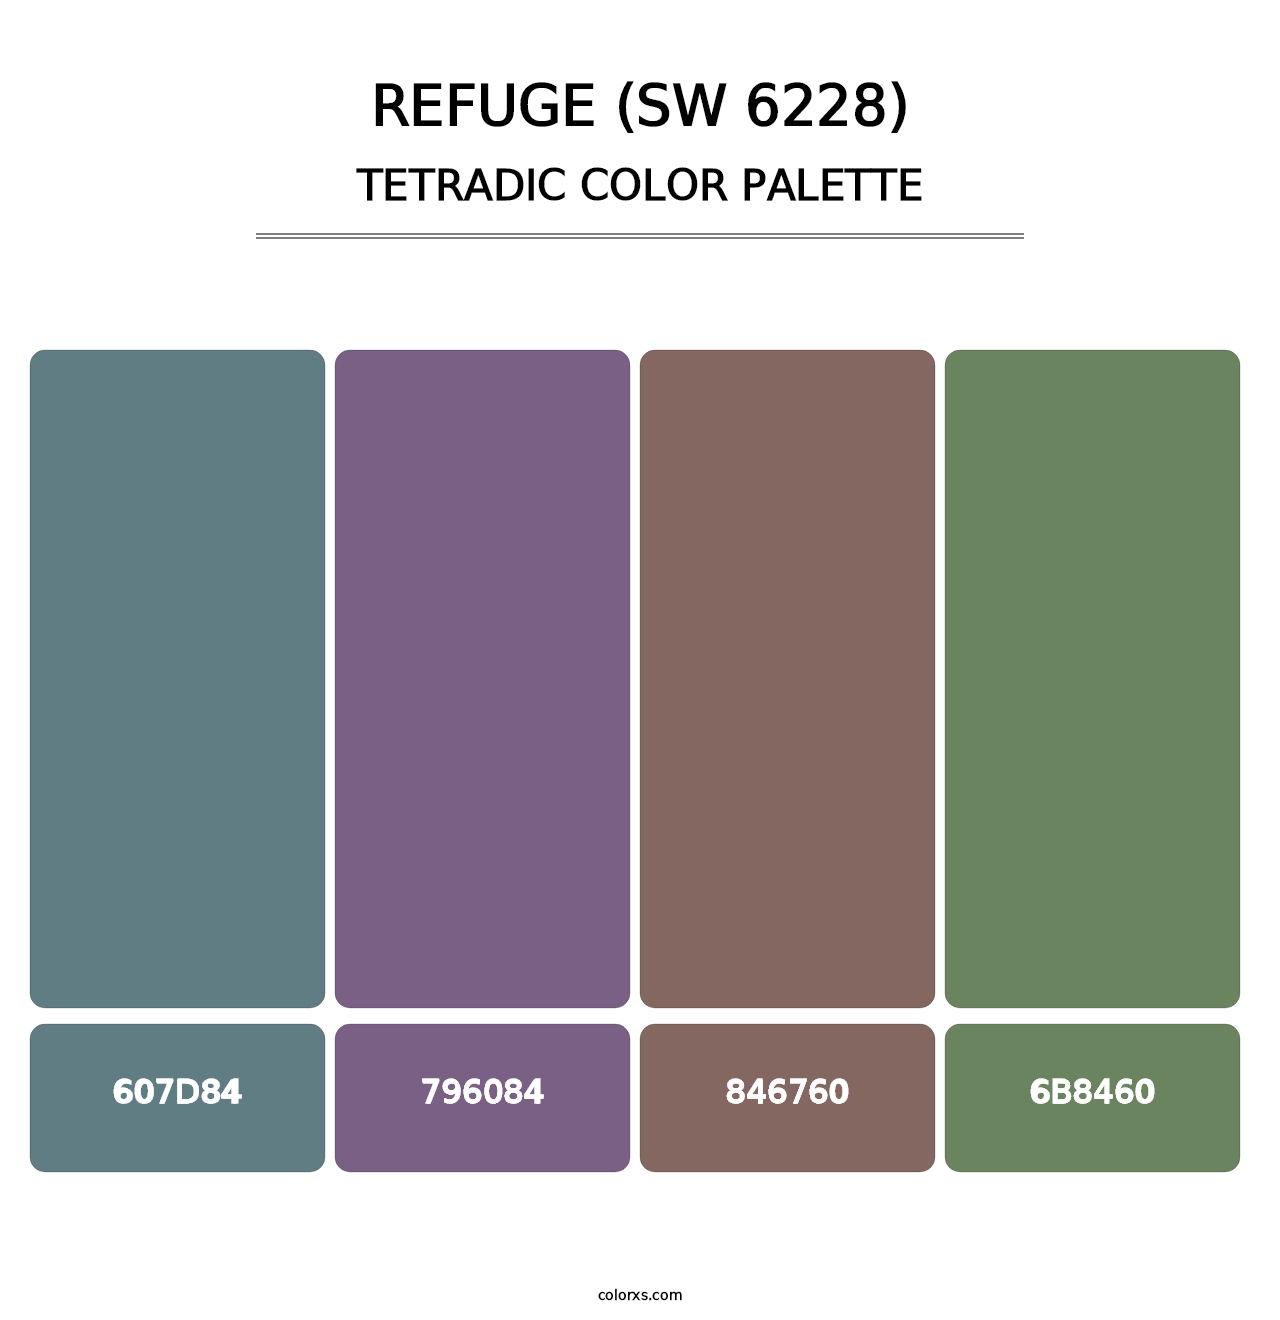 Refuge (SW 6228) - Tetradic Color Palette